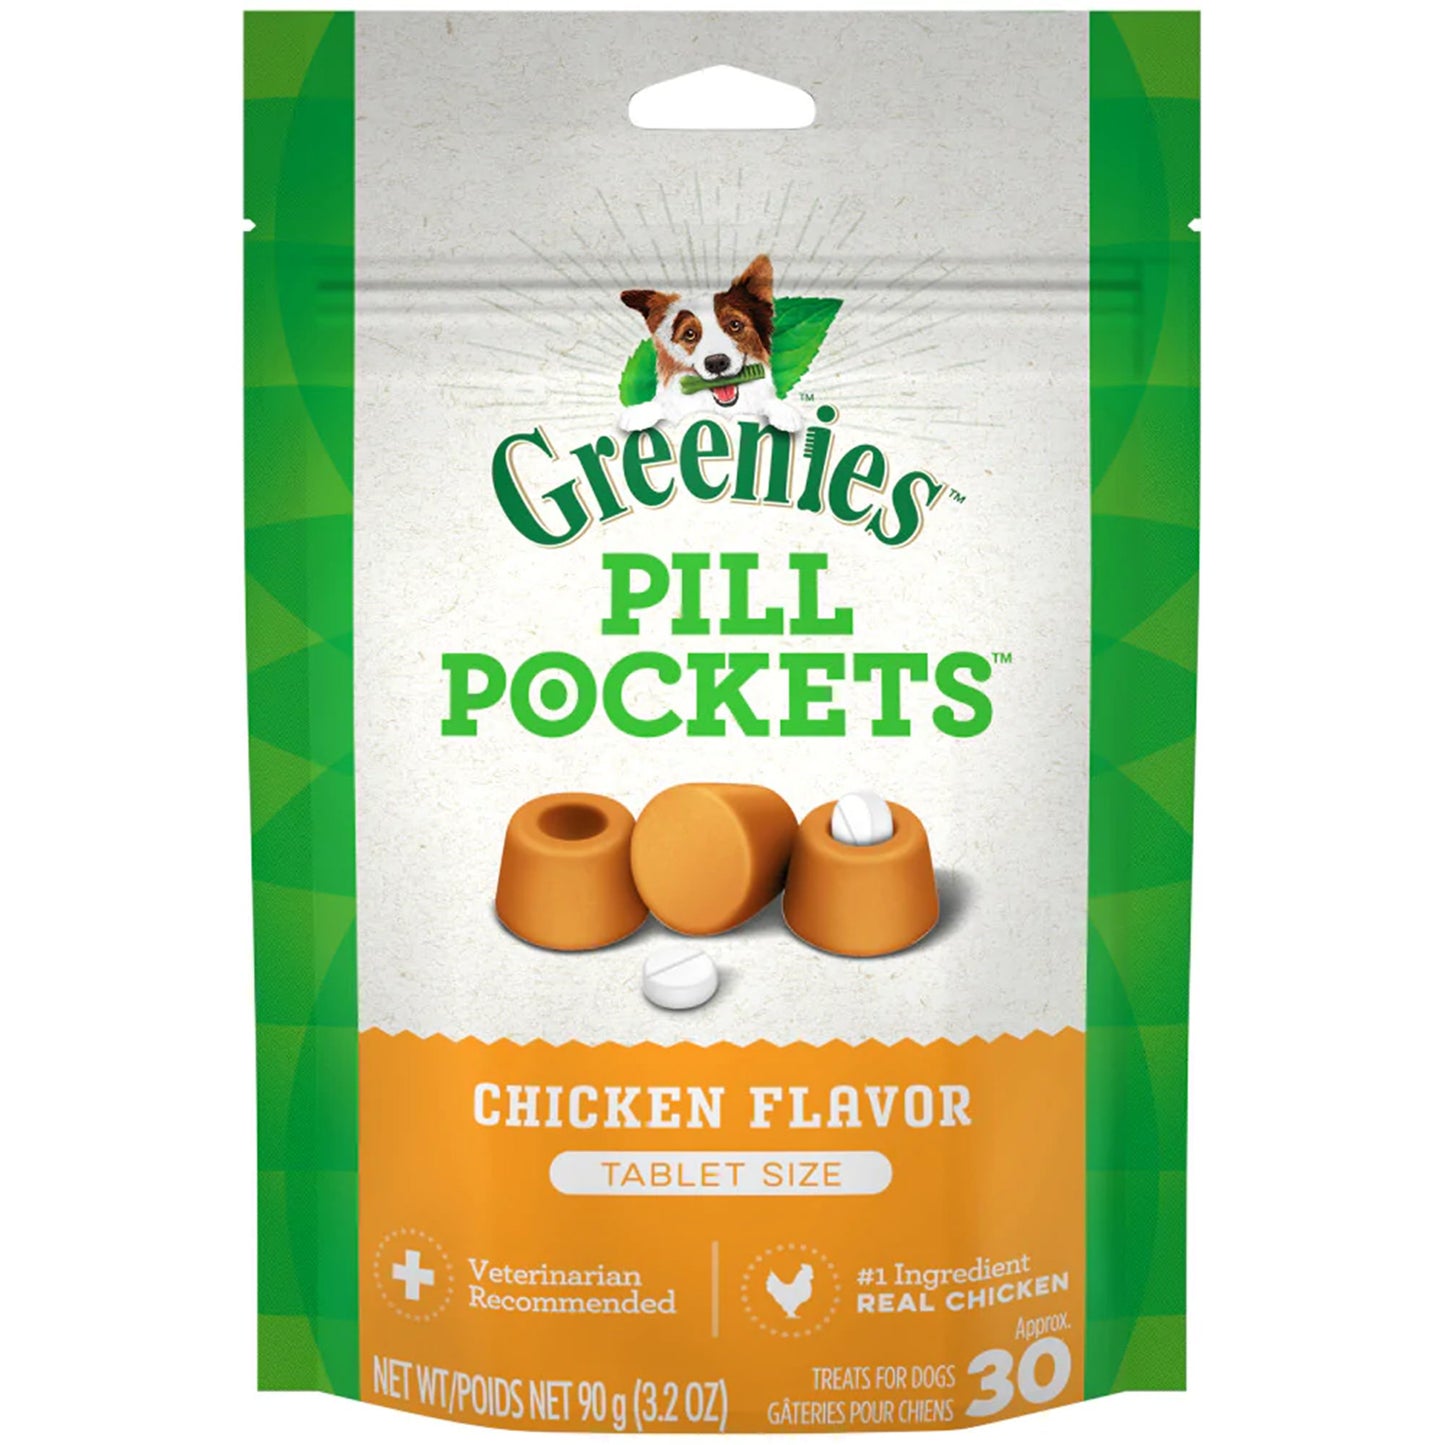 Greenies Pill Pockets Dog Treats Chicken Flavor Tablet 30 ct, 3.2 oz, Greenies